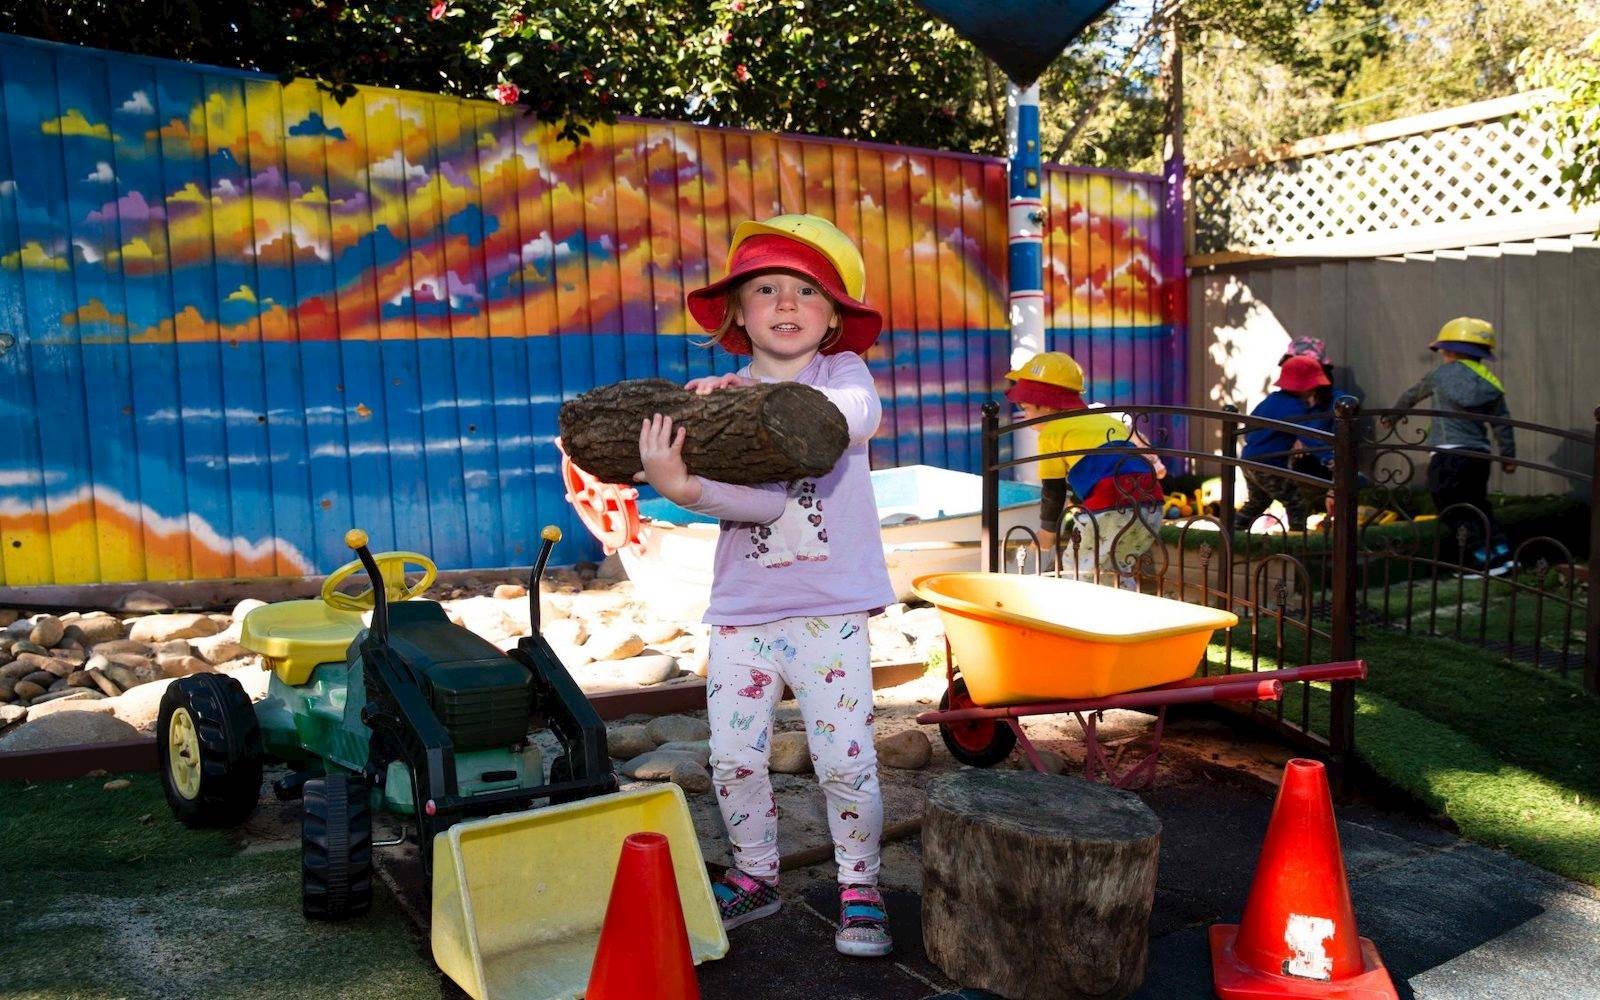 Lane Cove Montessori Child Care